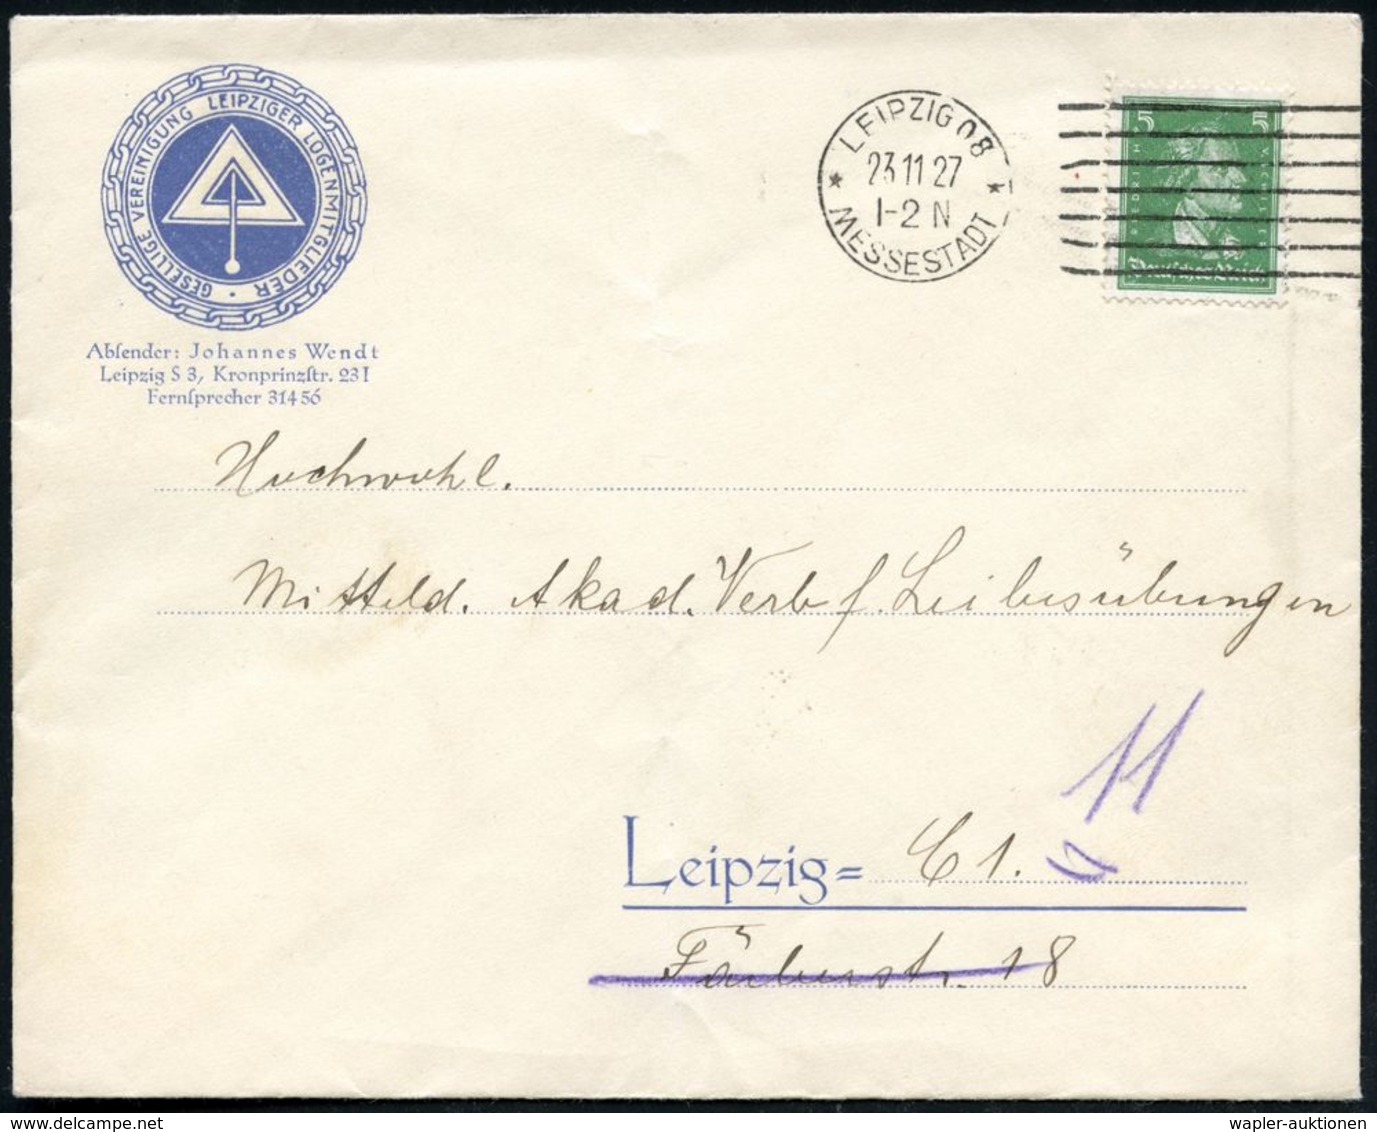 LOGE / FREIMAURER : LEIPZIG 08/ *MESSESTADT* 1927 (23.11.) MaWSt + 7 Striche Rechts Auf Blauem Logem.-Bf.: GESELLIGE VER - Freemasonry